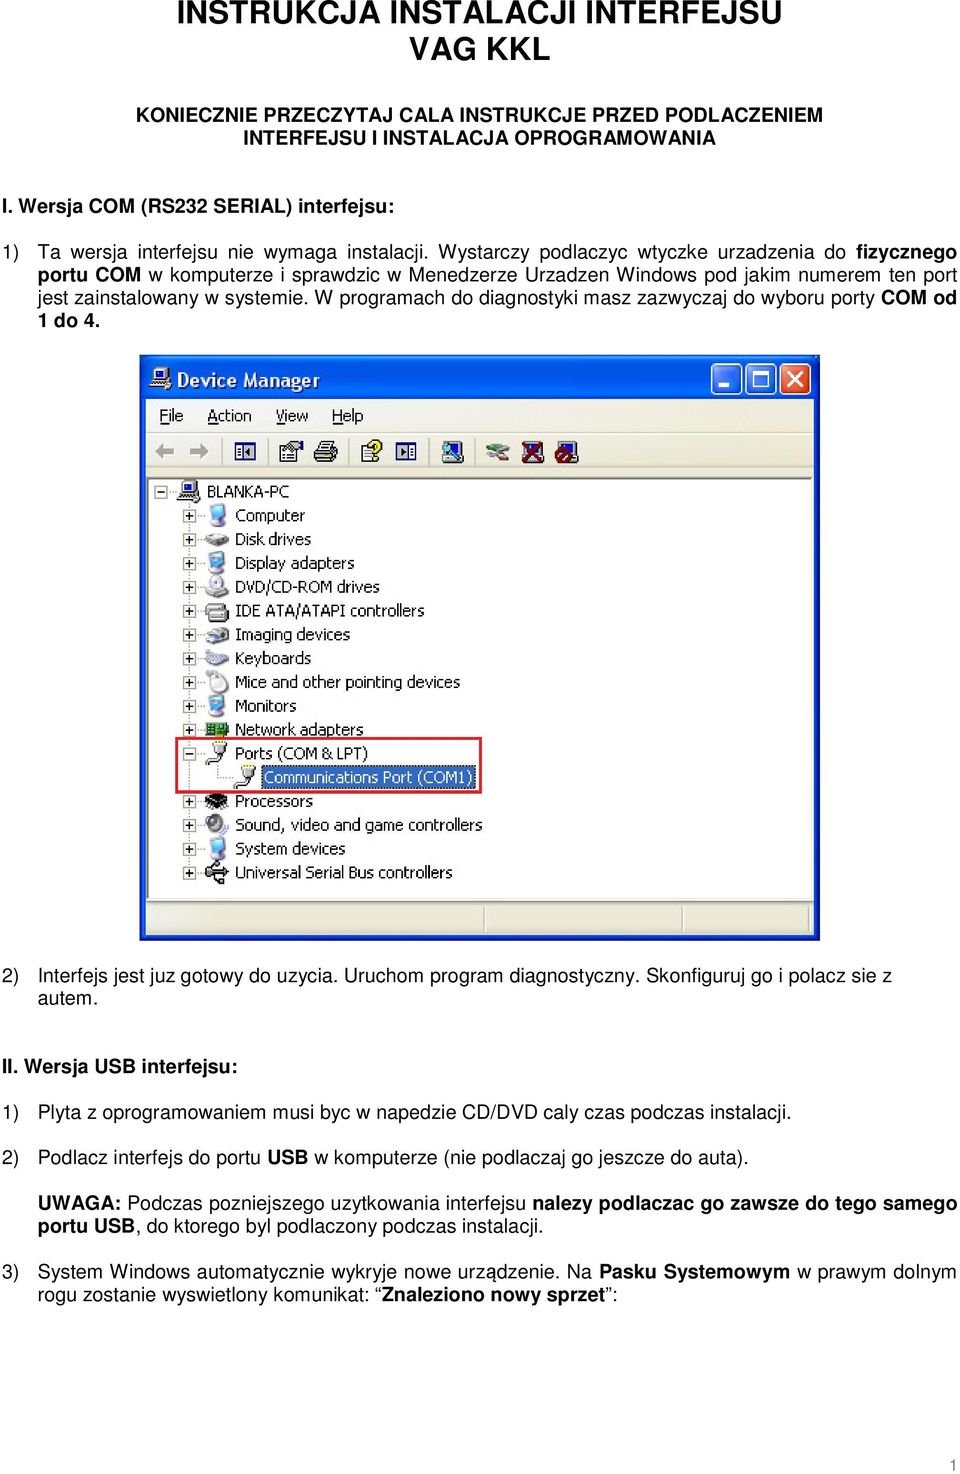 Wystarczy podlaczyc wtyczke urzadzenia do fizycznego portu COM w komputerze i sprawdzic w Menedzerze Urzadzen Windows pod jakim numerem ten port jest zainstalowany w systemie.